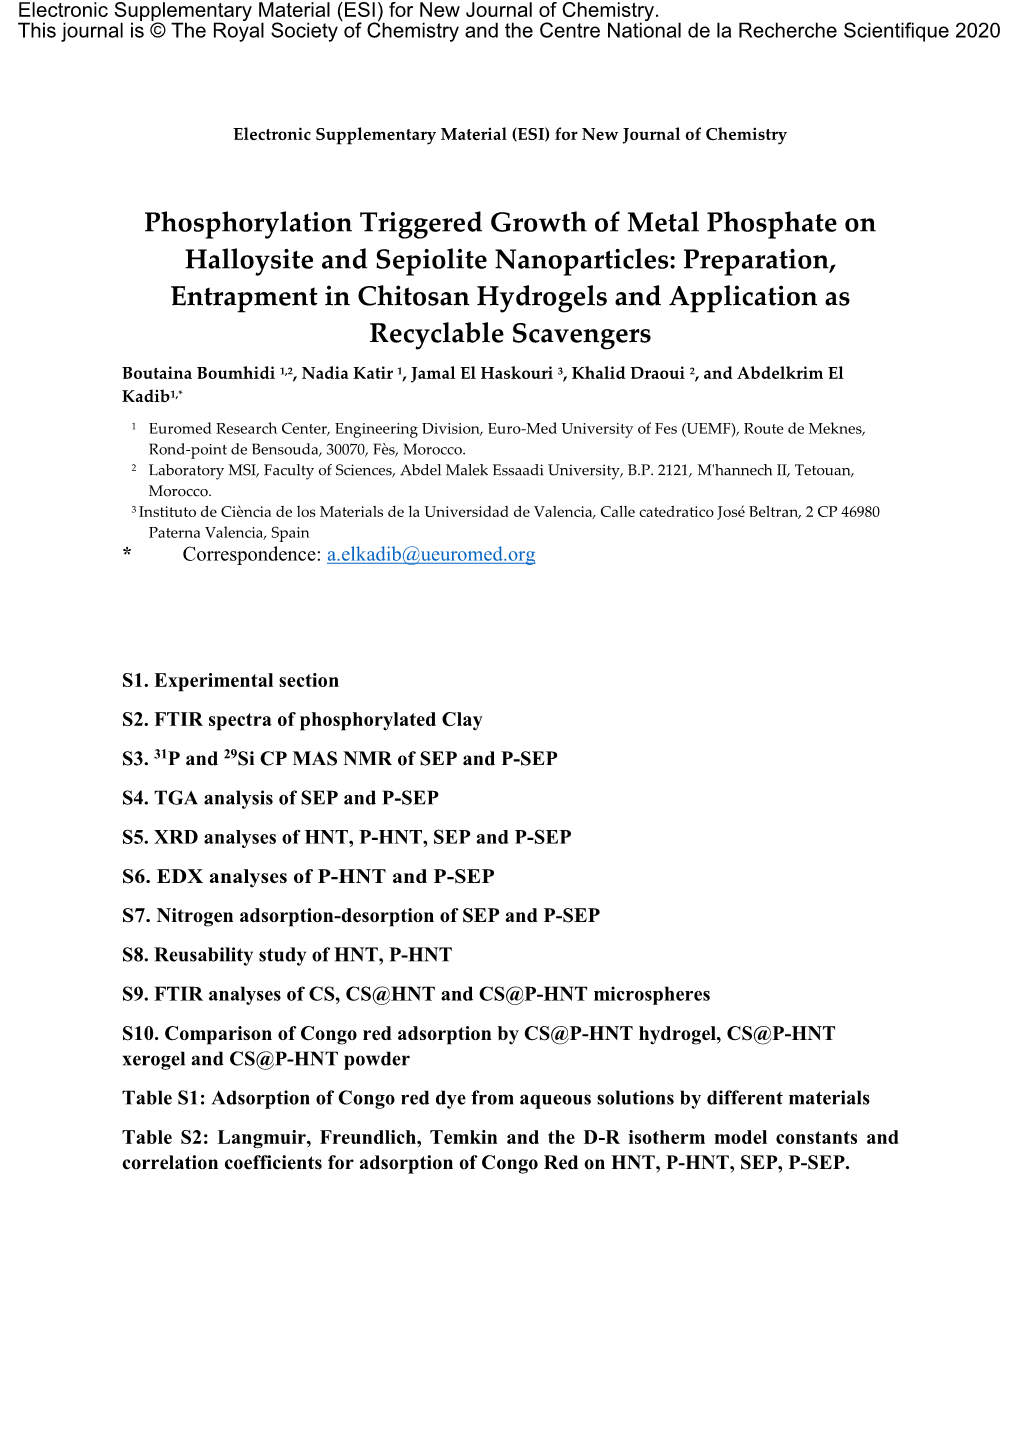 Phosphorylation Triggered Growth of Metal Phosphate on Halloysite And